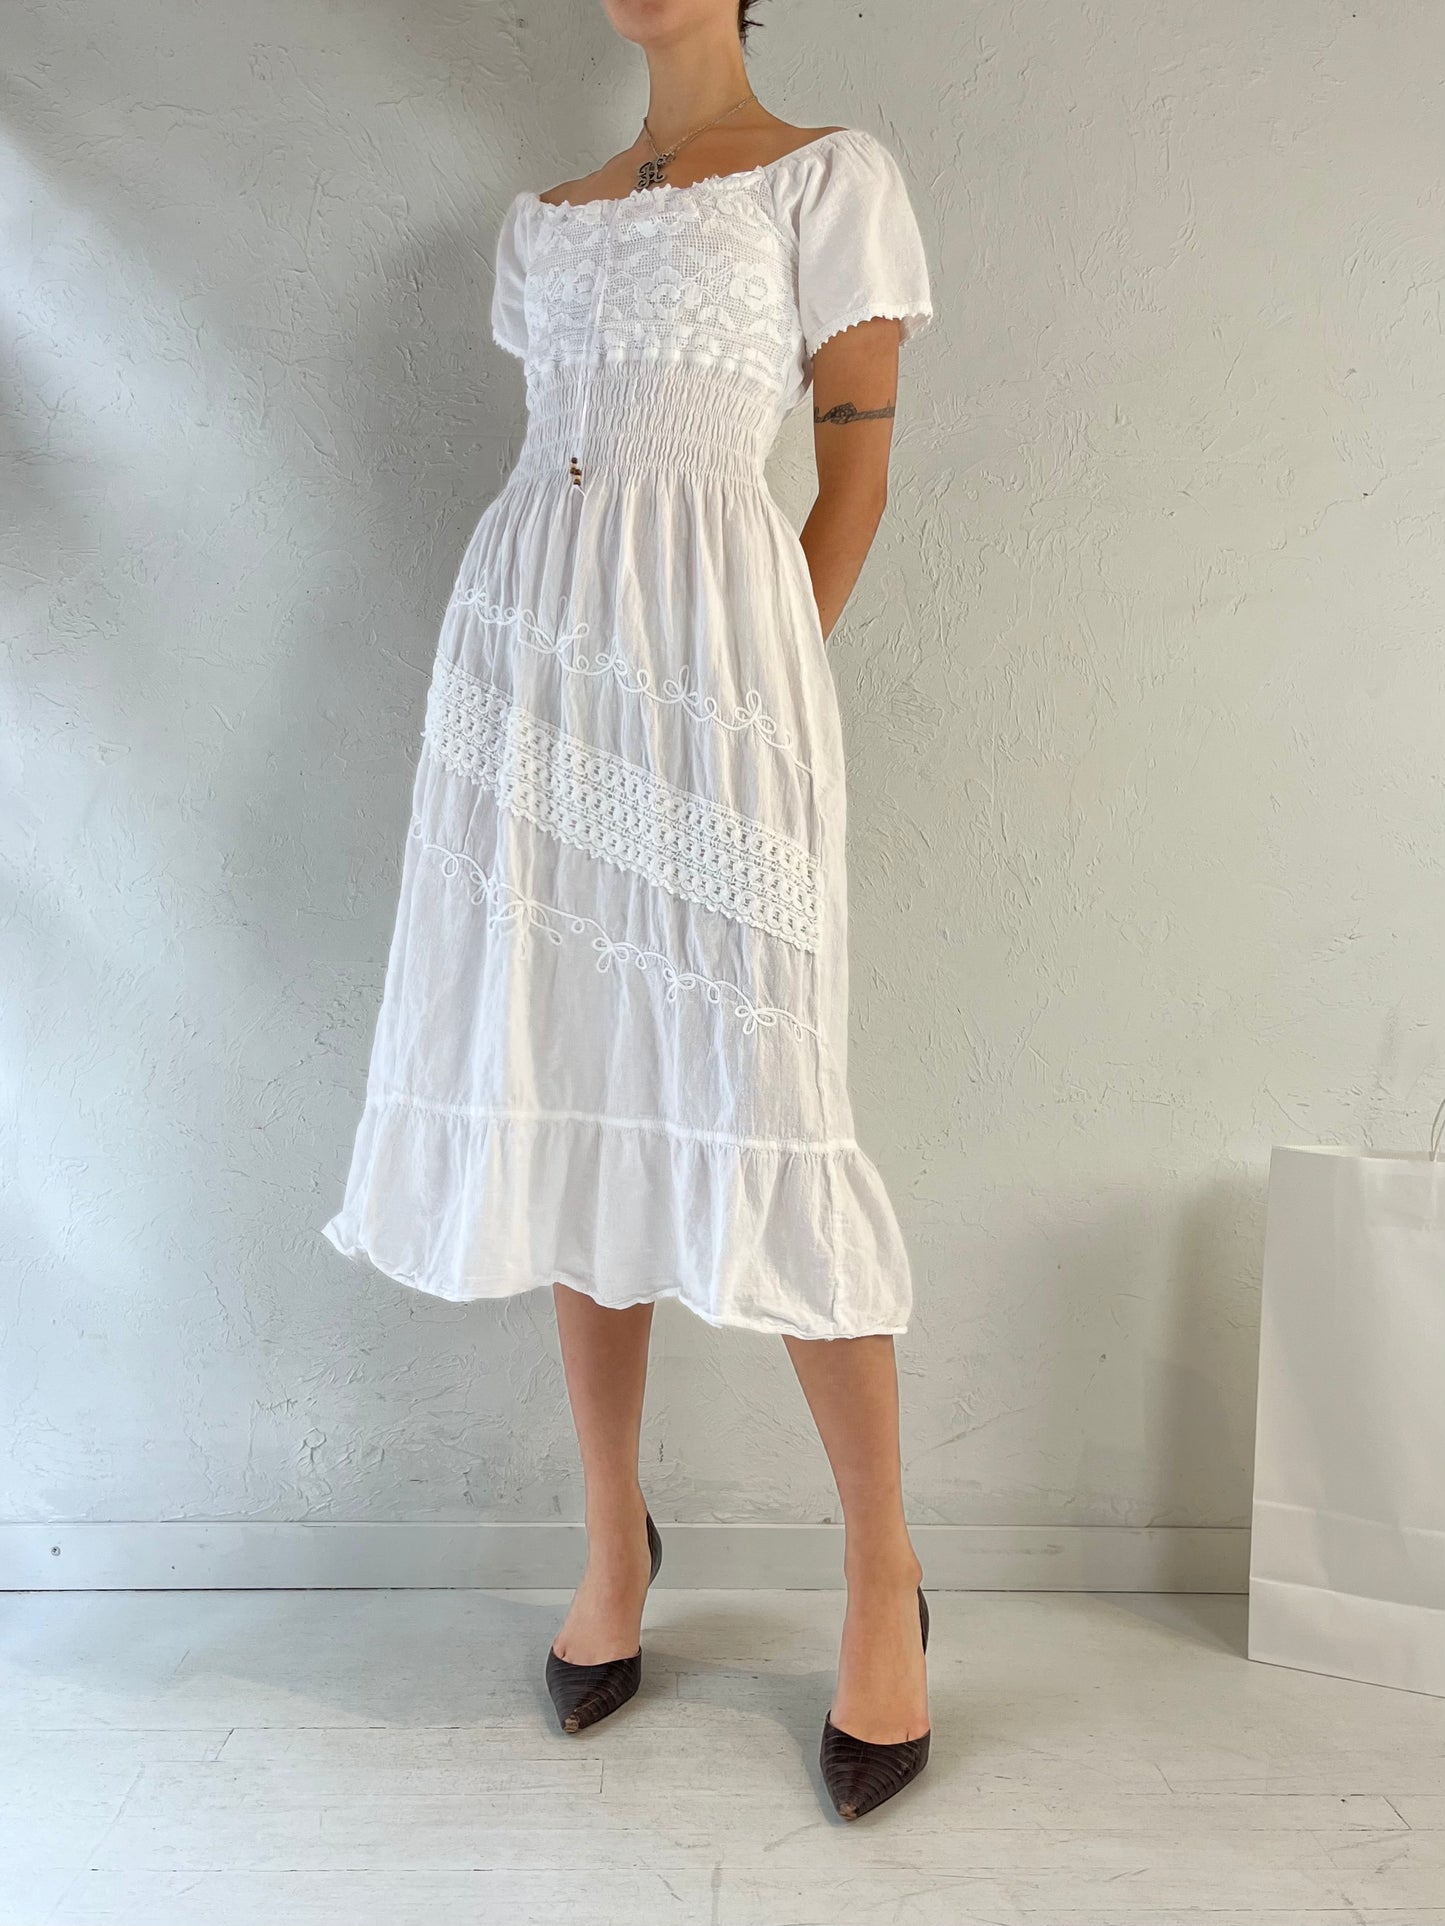 Vintage White Cotton Midi Dress / Small